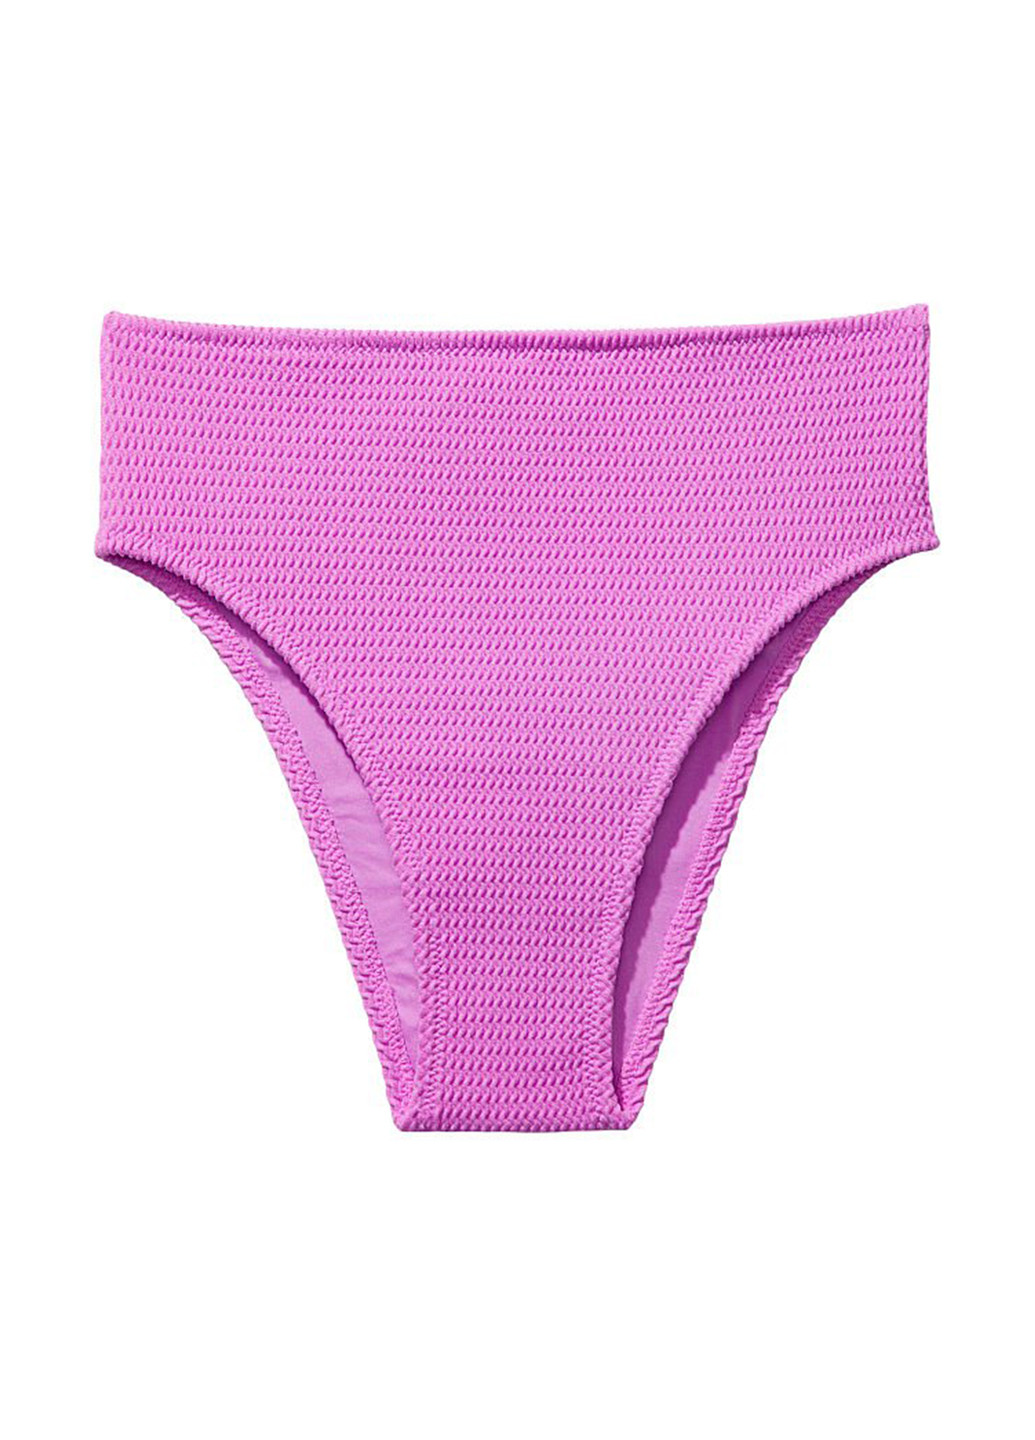 Розово-лиловый летний купальник (лиф, трусы) топ Victoria's Secret